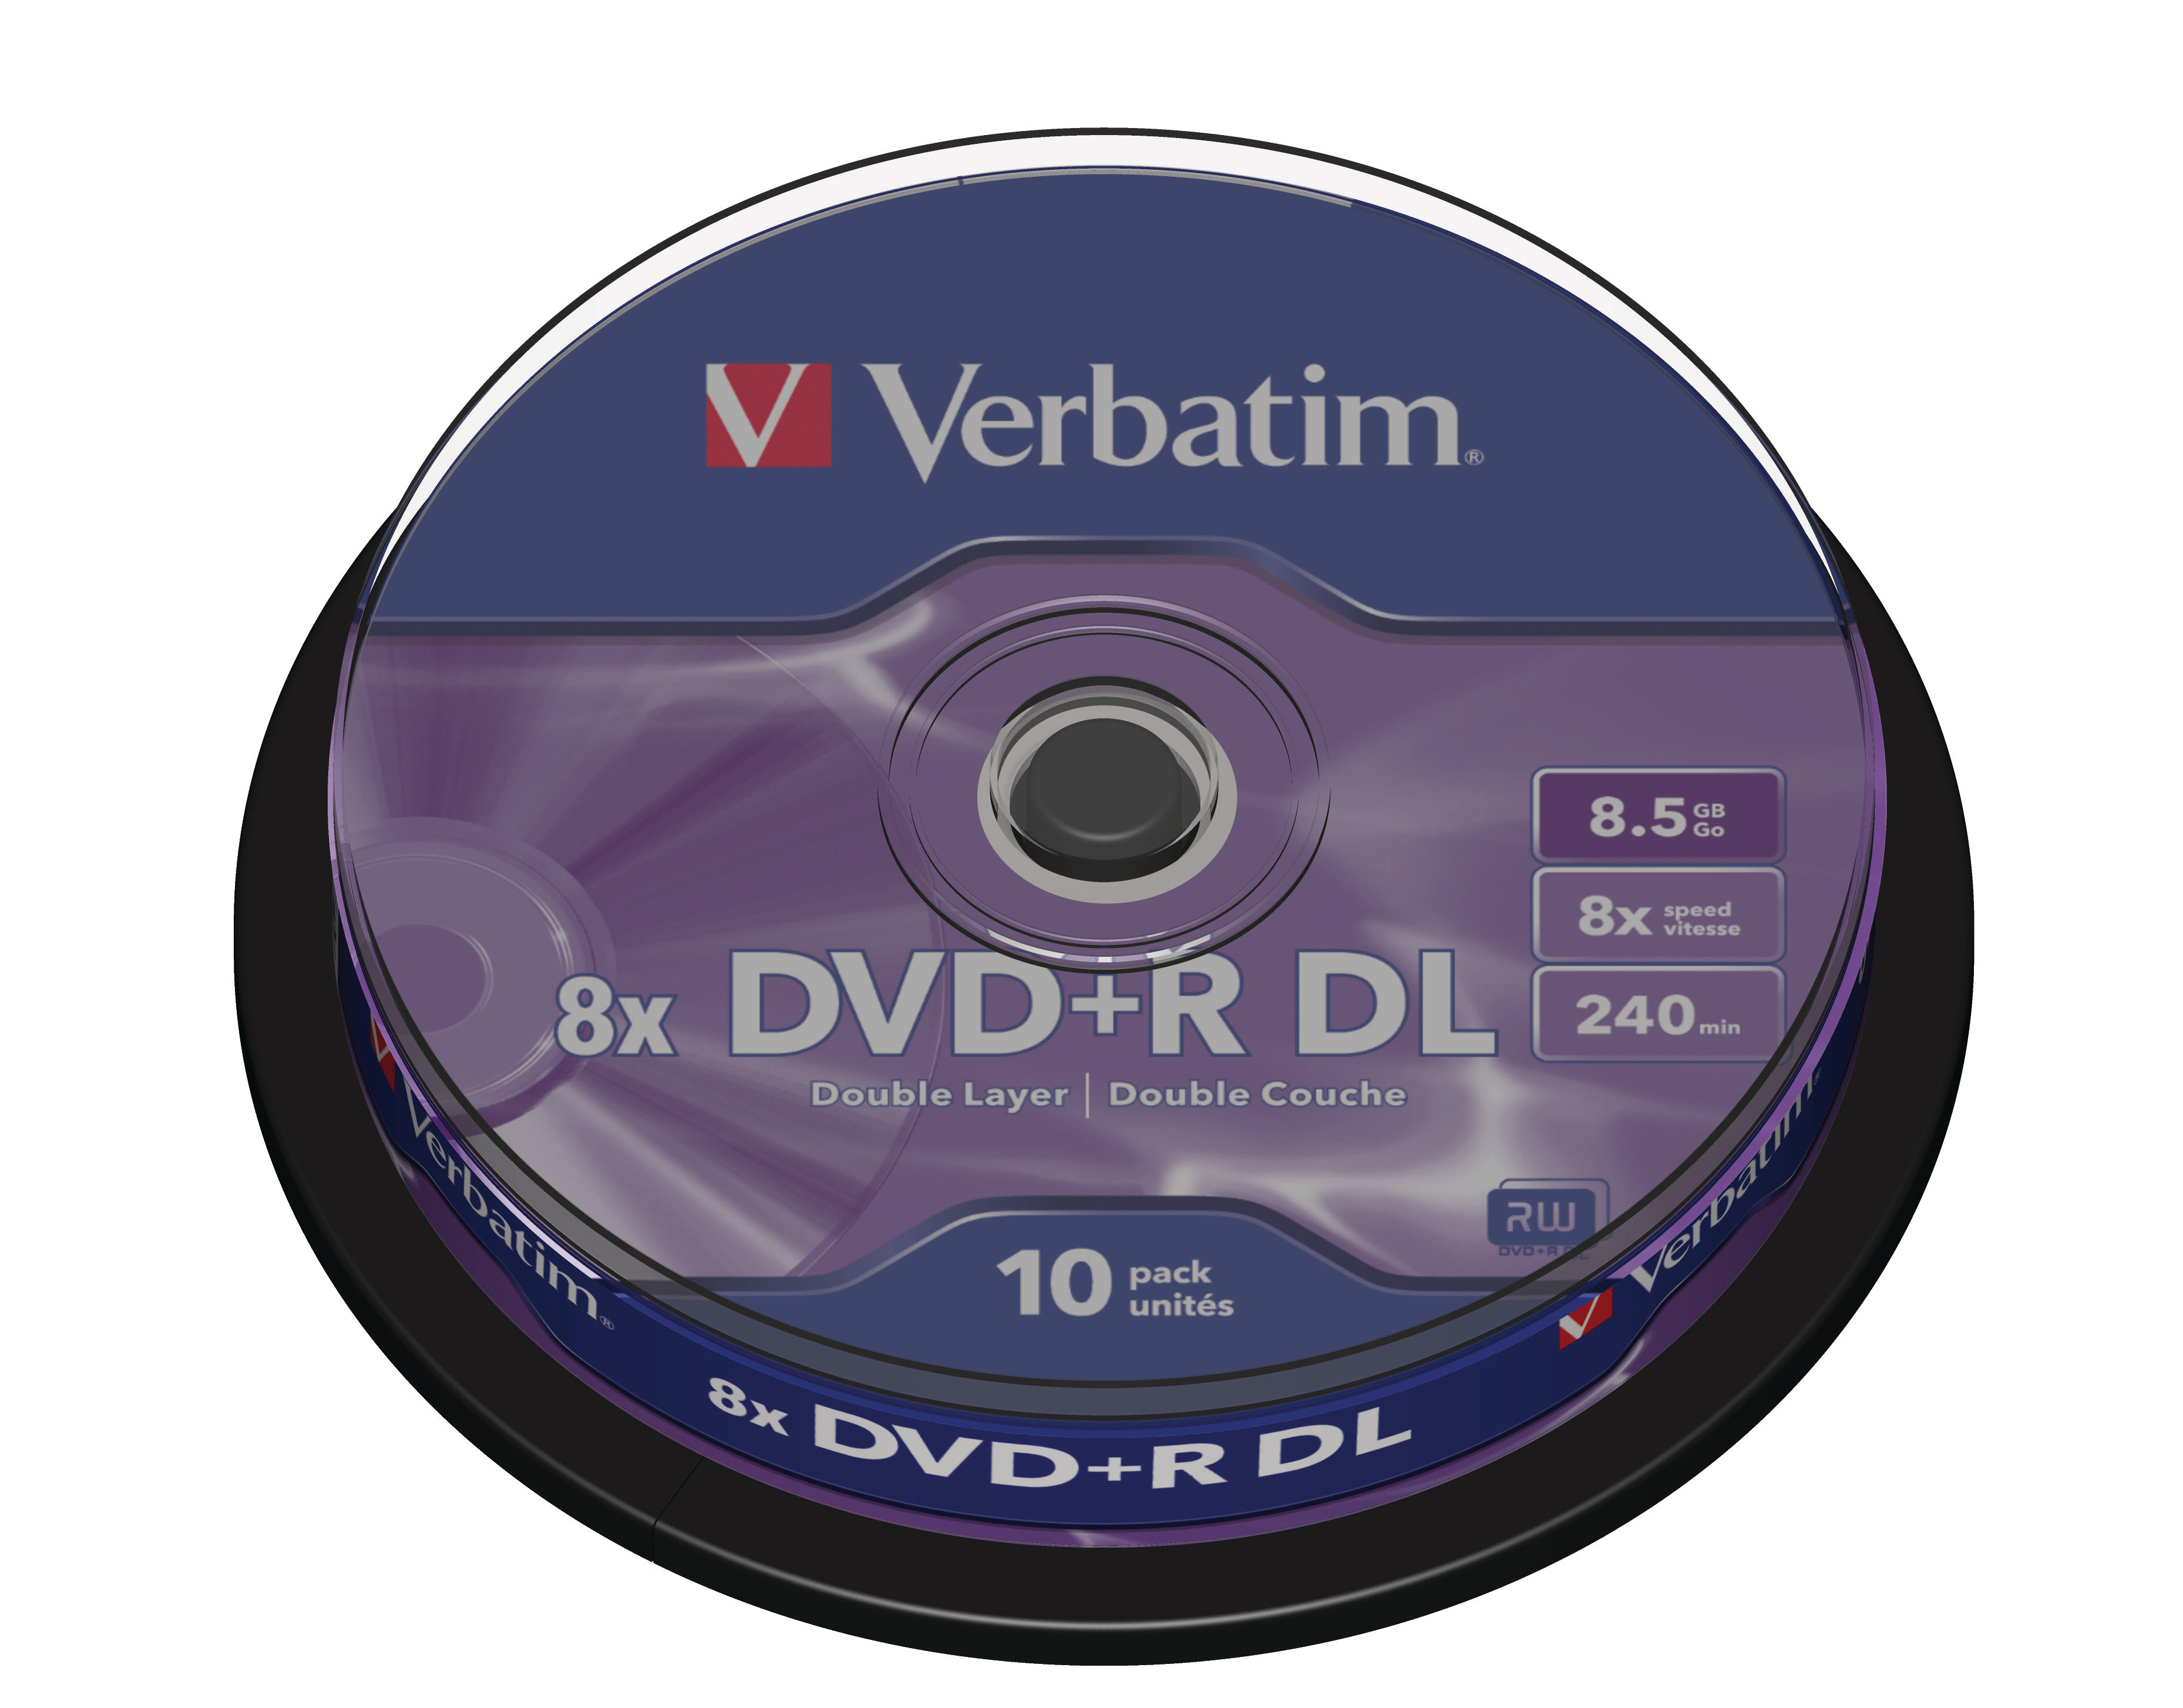 VERBATIM DVD+R Spindle 8.5GB 43666 8x DL Matt Silver 10 Pcs 8x DL Matt Silver 10 Pcs